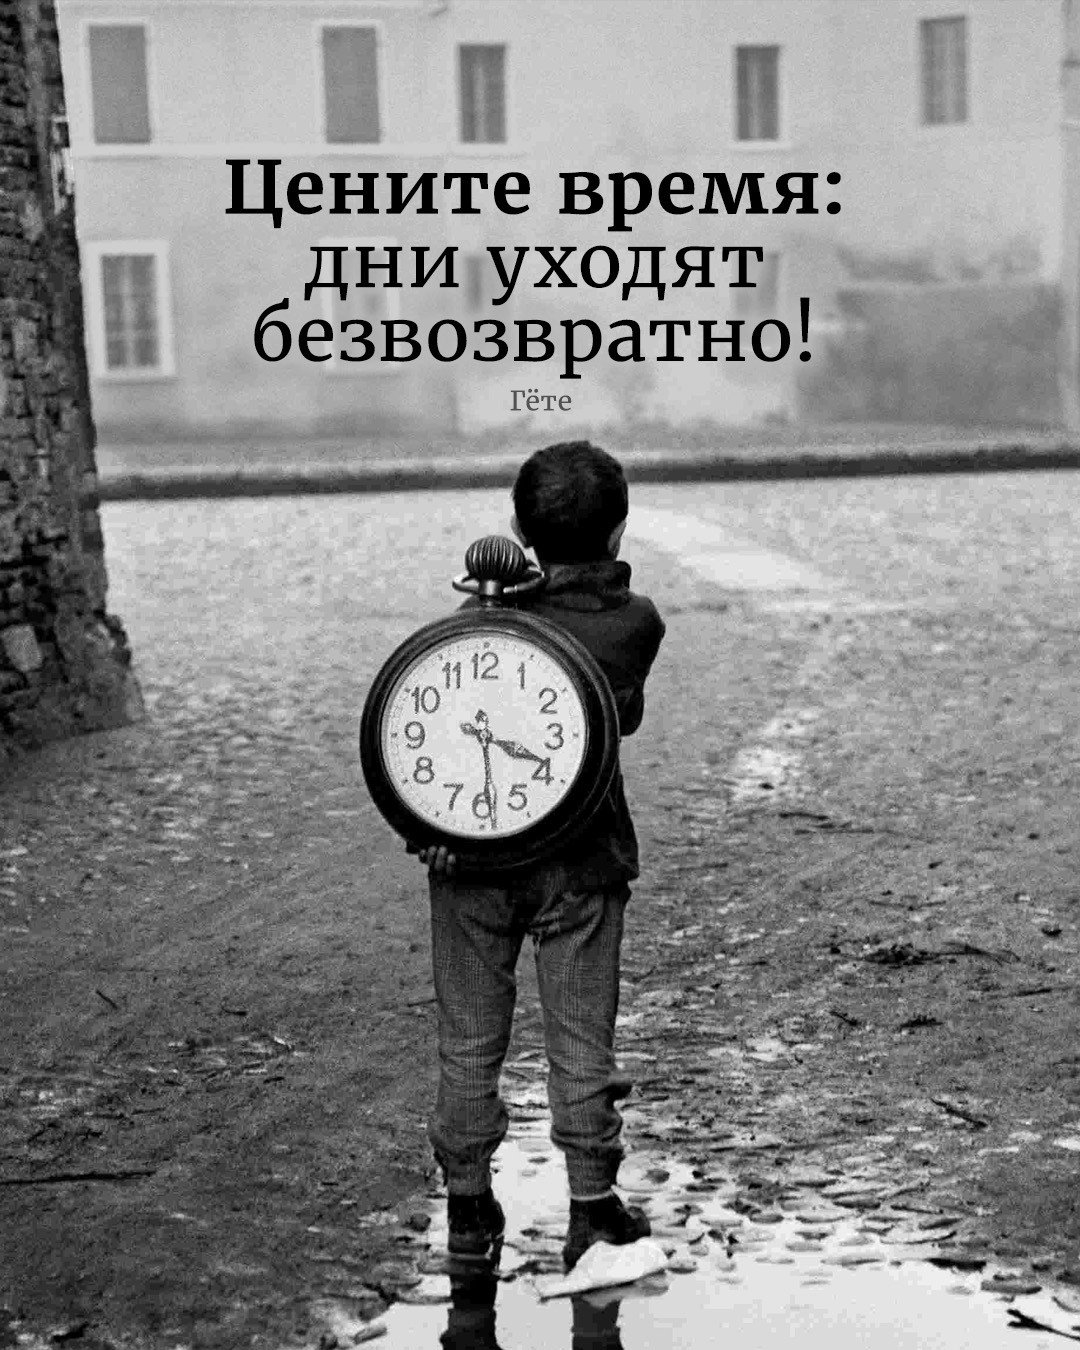 Вернуть время быстро. Цените время. Дорожите временем. А время уходит. Цитаты про время.